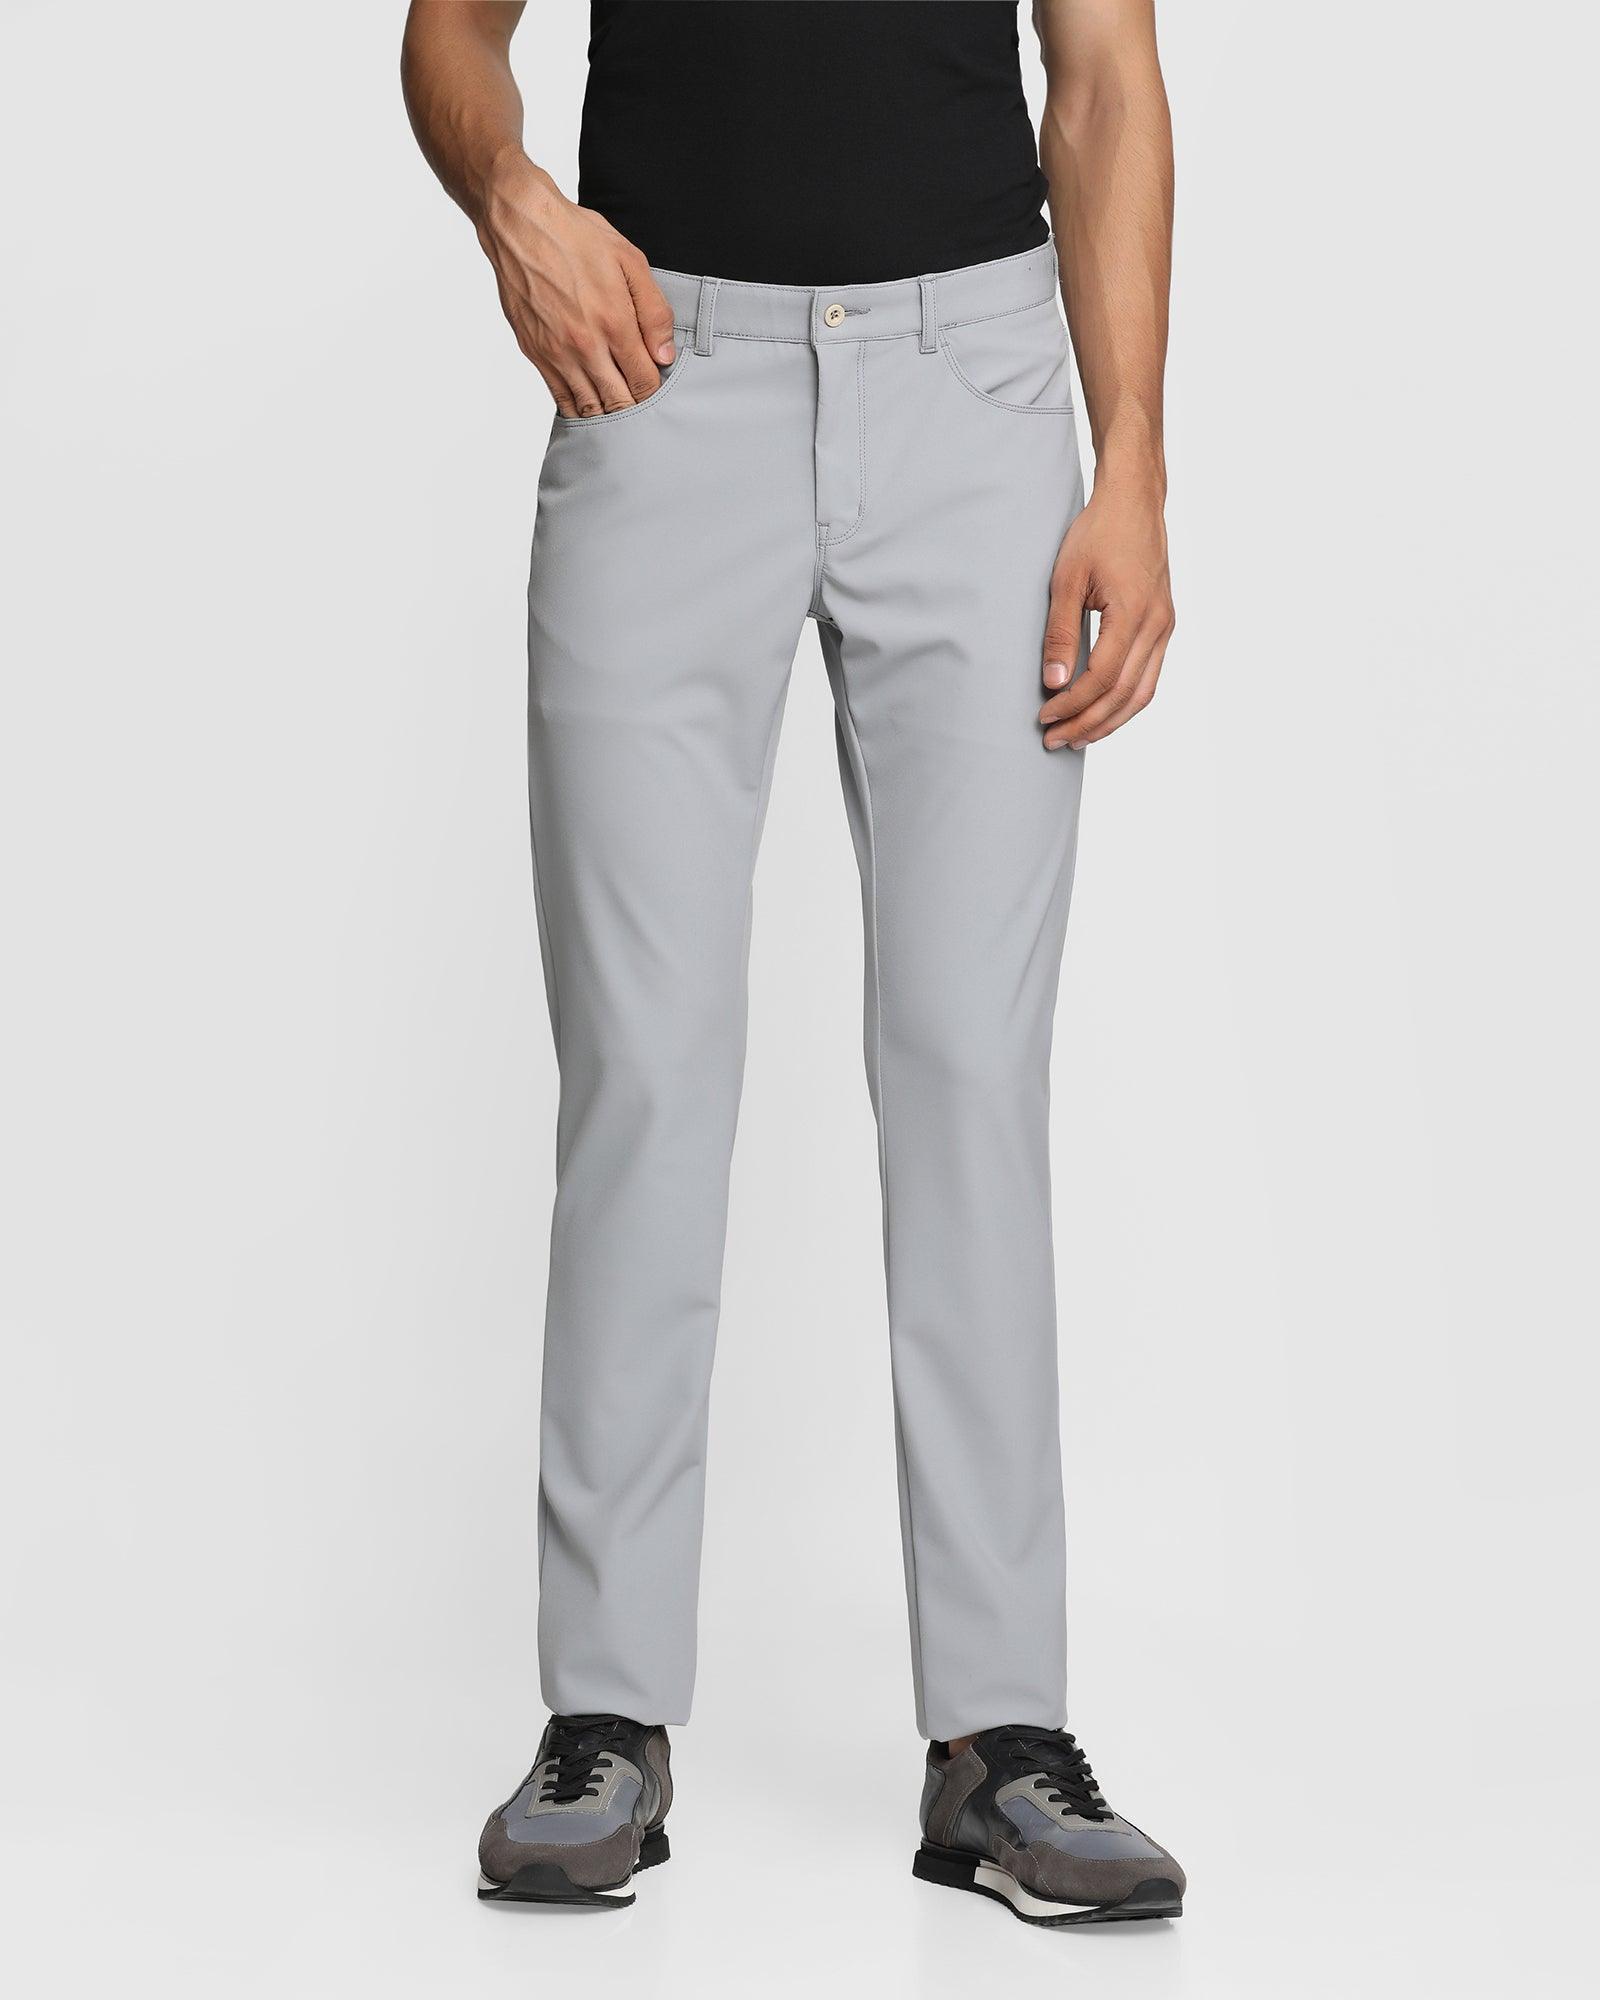 techpro b5p casual grey solid khakis - muji